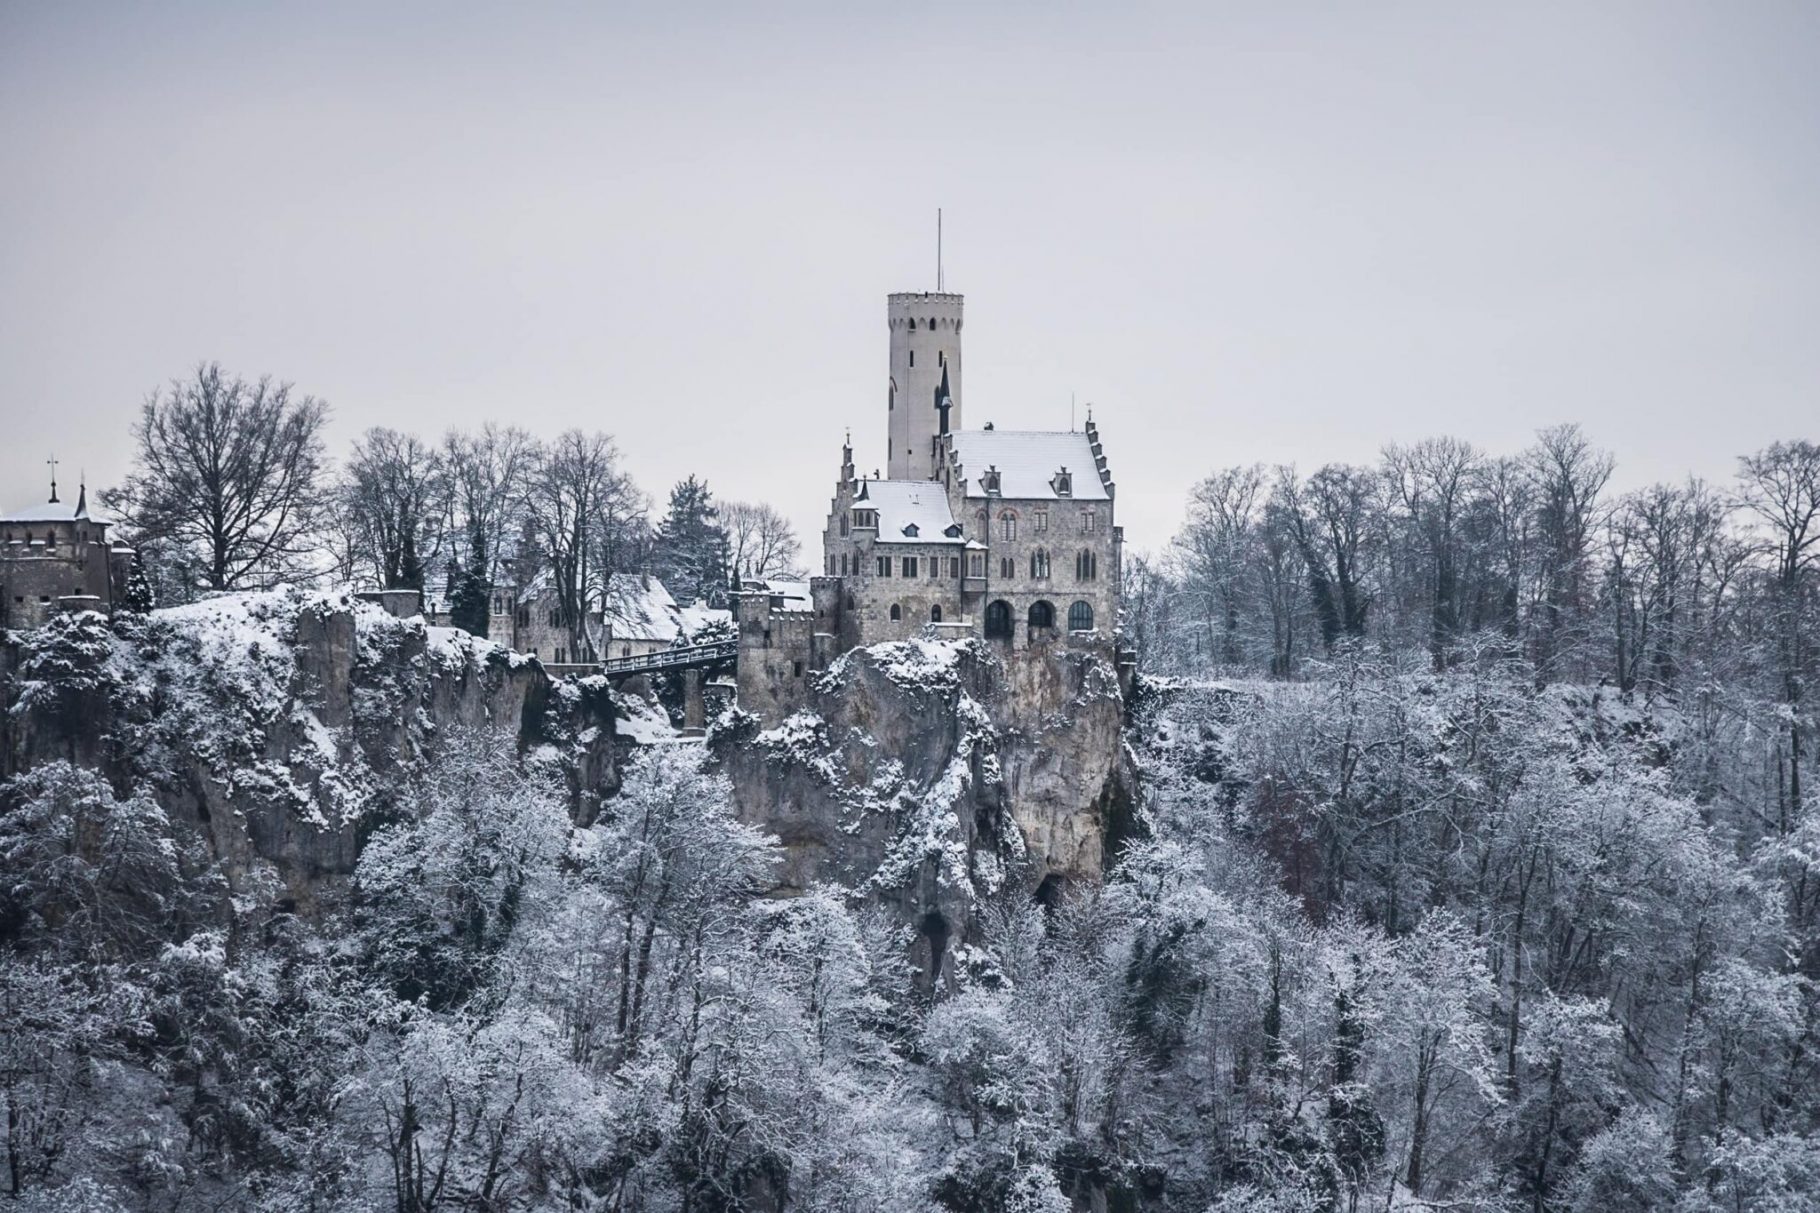 Traumhafte Winterstimmung am Schloss Lichtenstein, Aussicht vom Traifelberg nach kurzem Schloss Lichtenstein Wandern